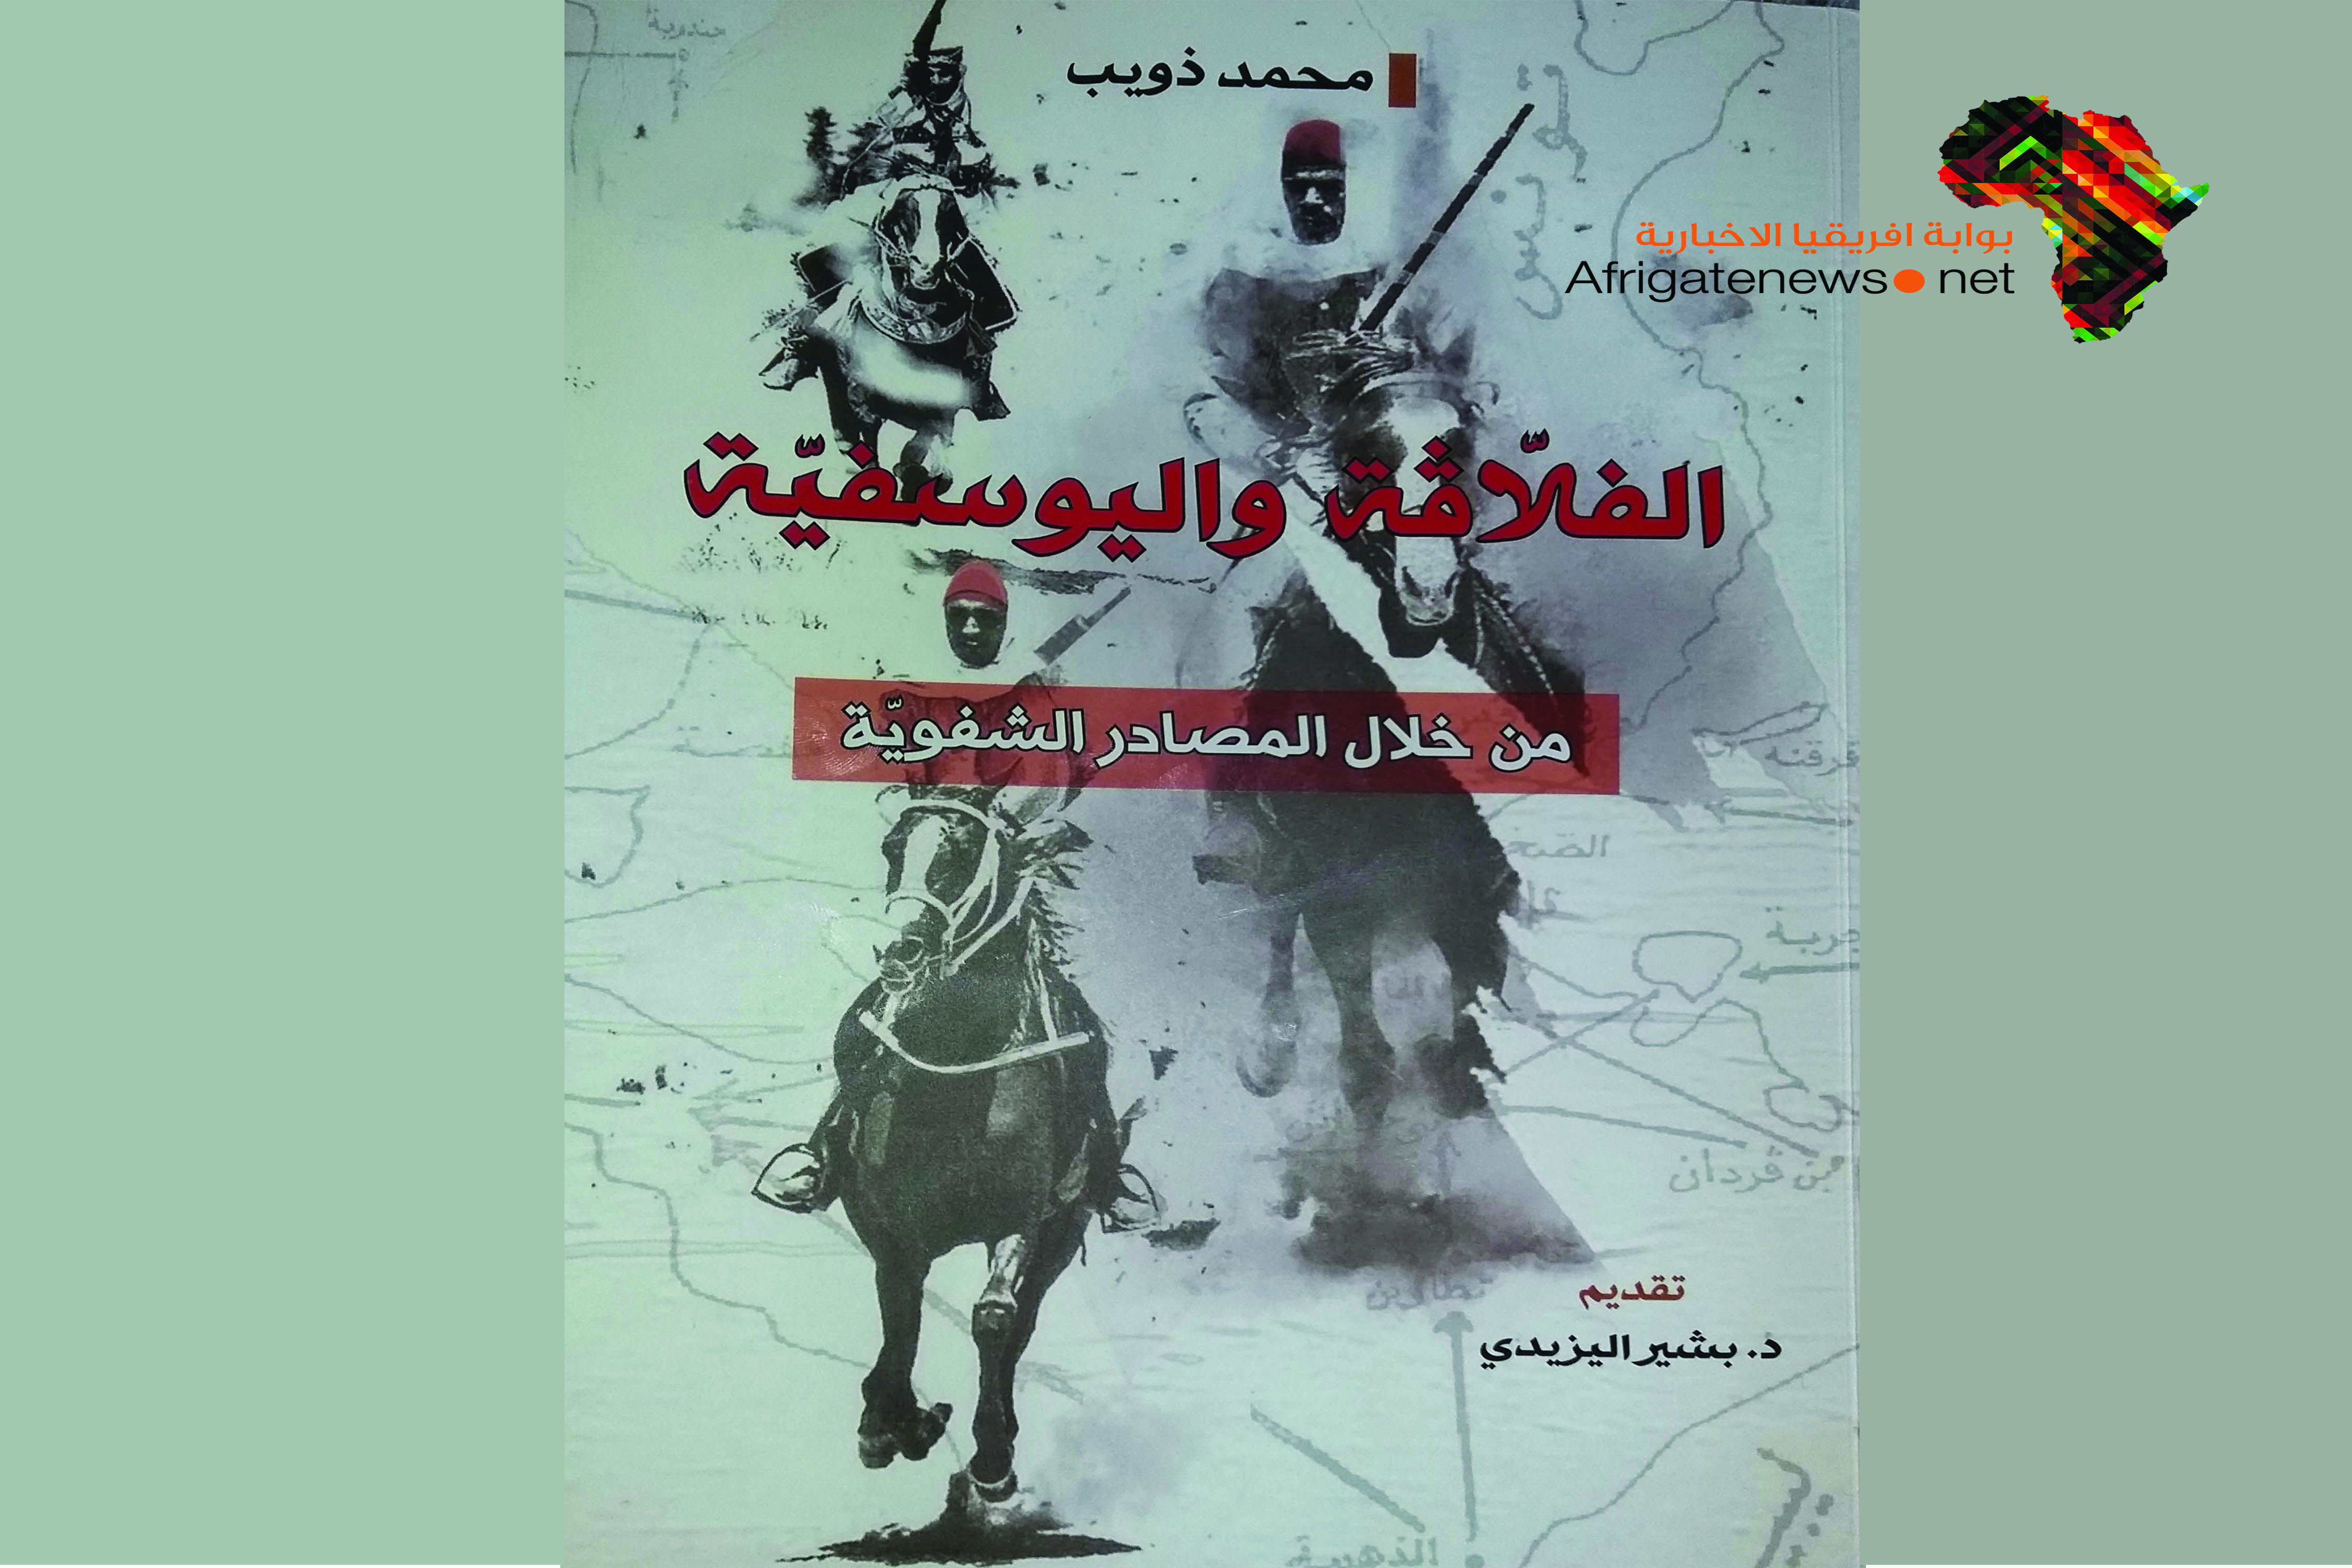 كتاب تونسي يكشف الدور الليبي في مقاومة الاستعمار الفرنسي بوابة أفريقيا الإخبارية